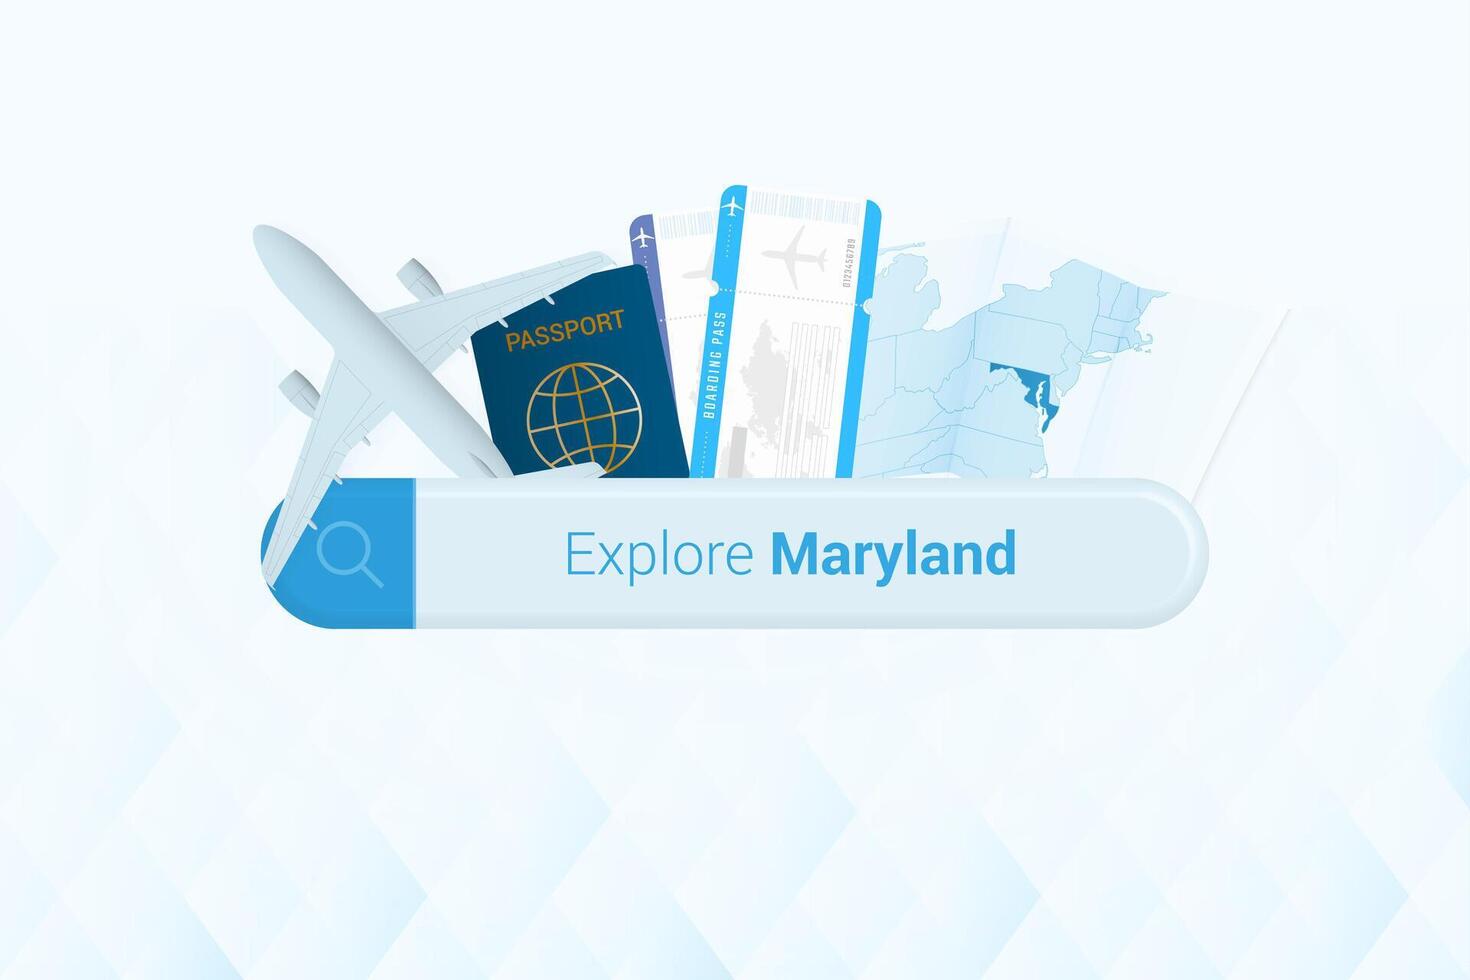 recherche des billets à Maryland ou Voyage destination dans Maryland. recherche bar avec avion, passeport, embarquement passer, des billets et carte. vecteur